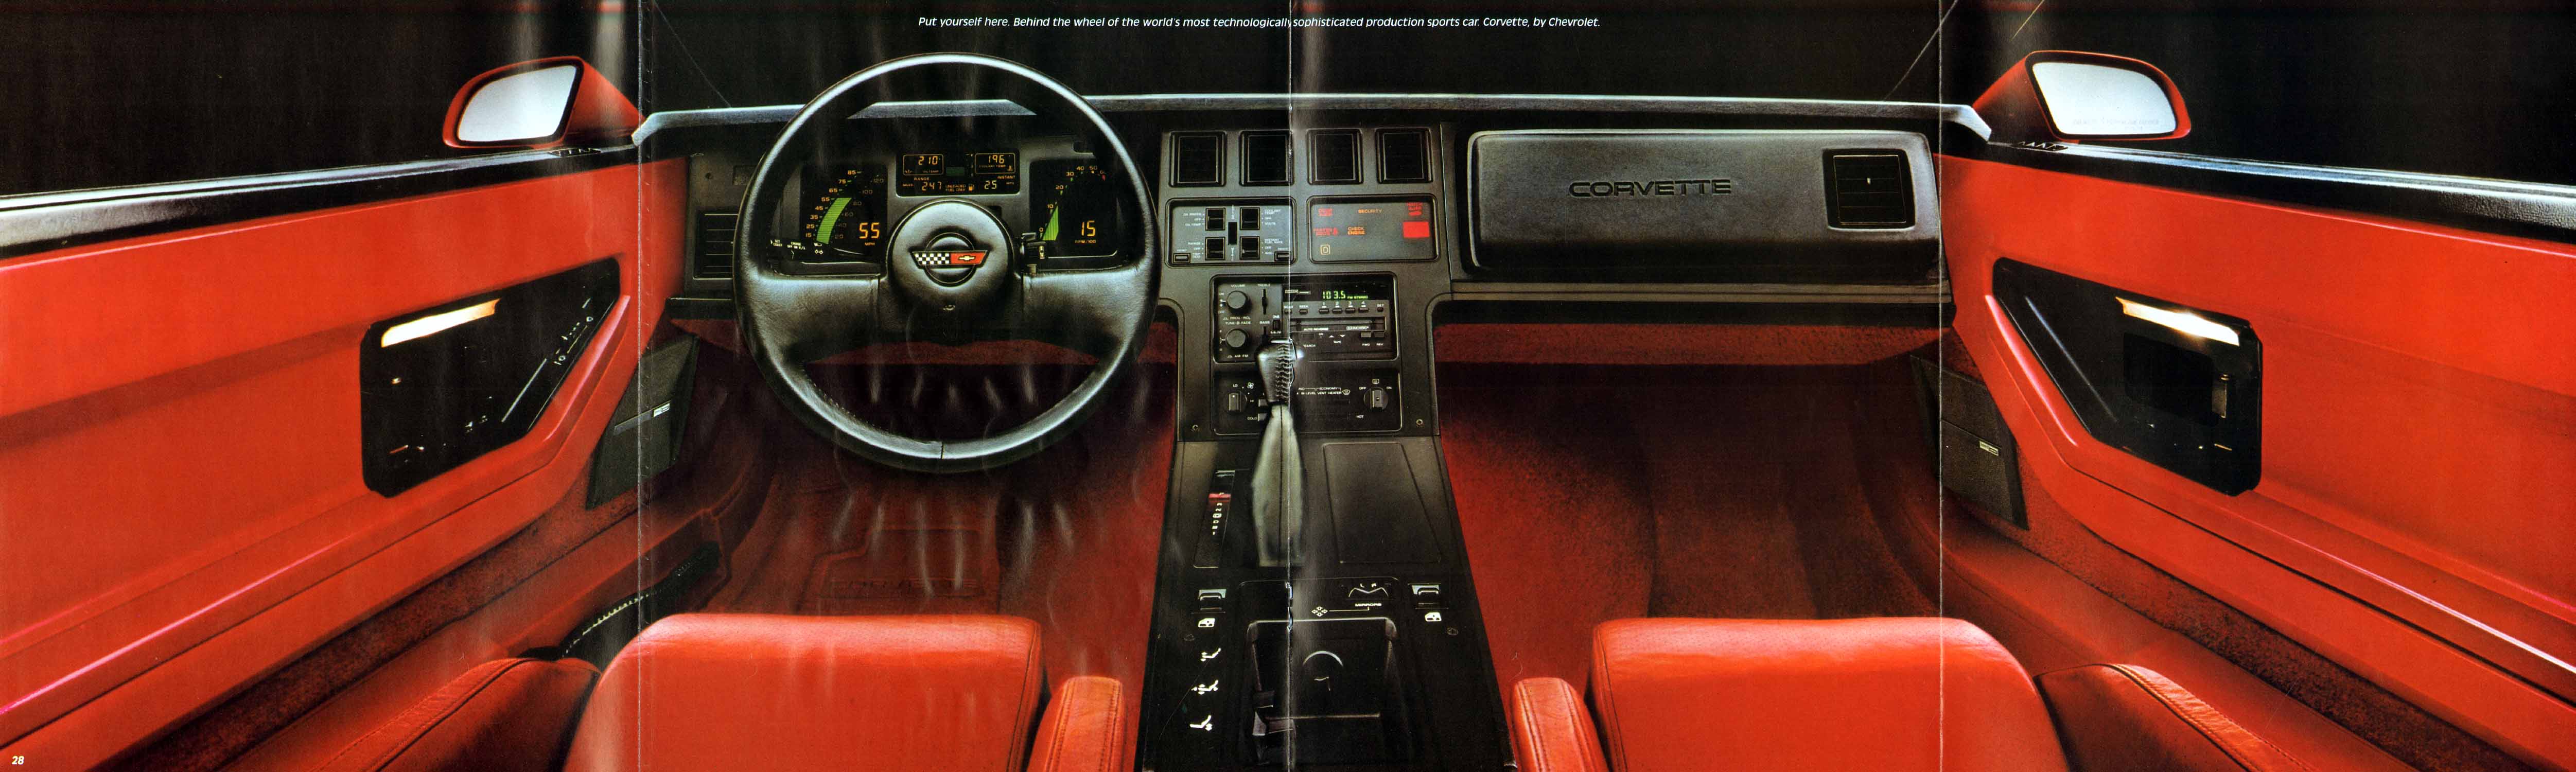 1985 Chevrolet Corvette-28-29-30-31